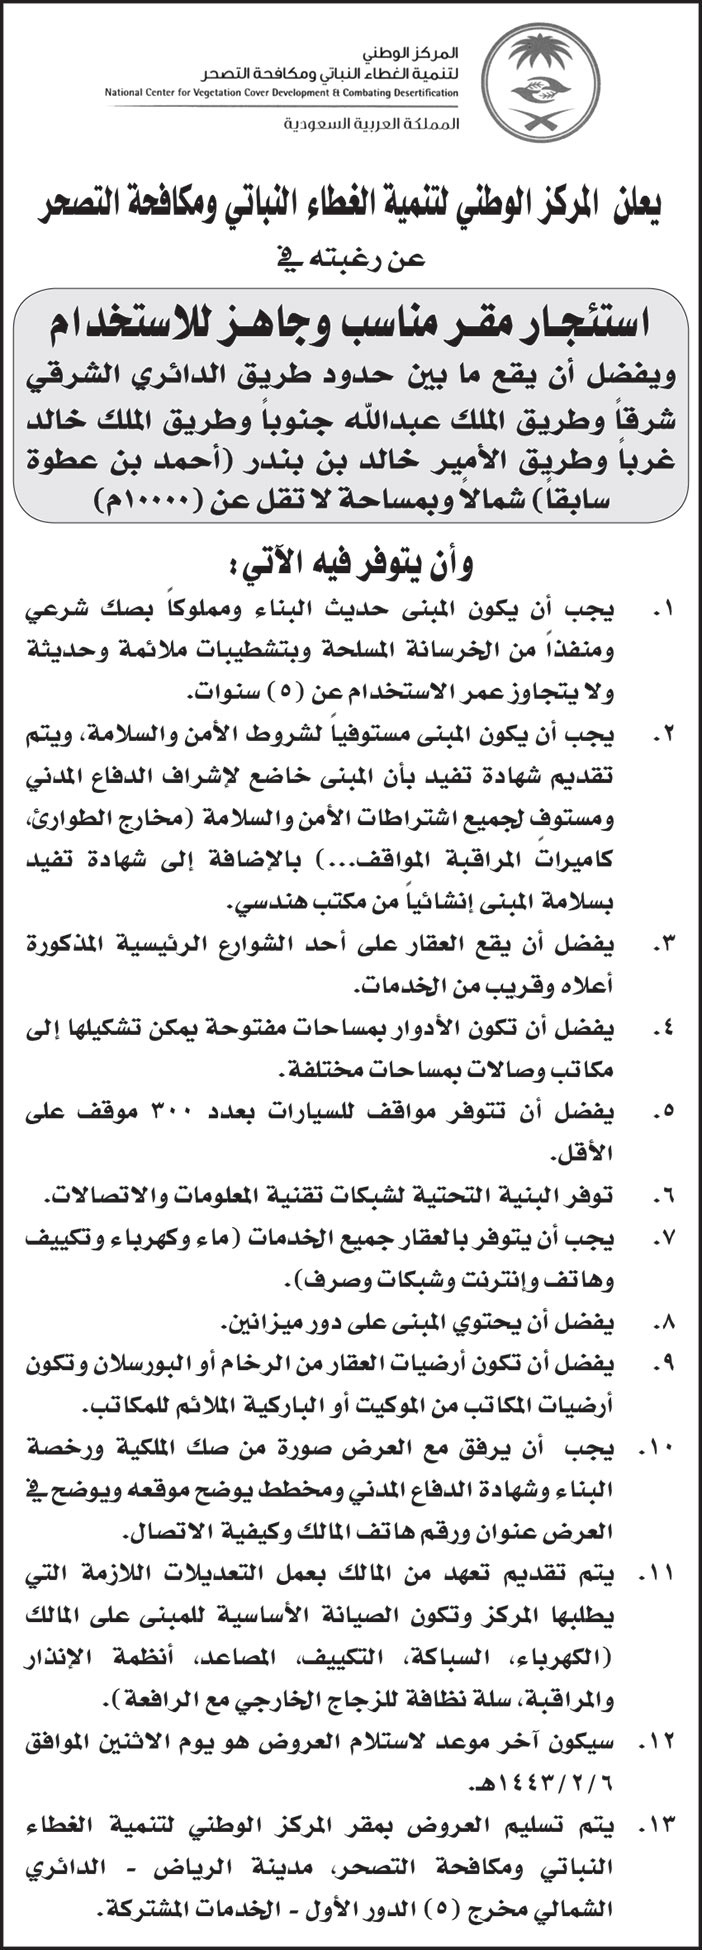 المركز الوطني لتنمية الغطاء النباتي وكافحة التسحر ترغب في استئجار مقر مناسب وجاهز للاستخدام بمدينة الرياض وبمساحة لا تقل عن (10000م) 